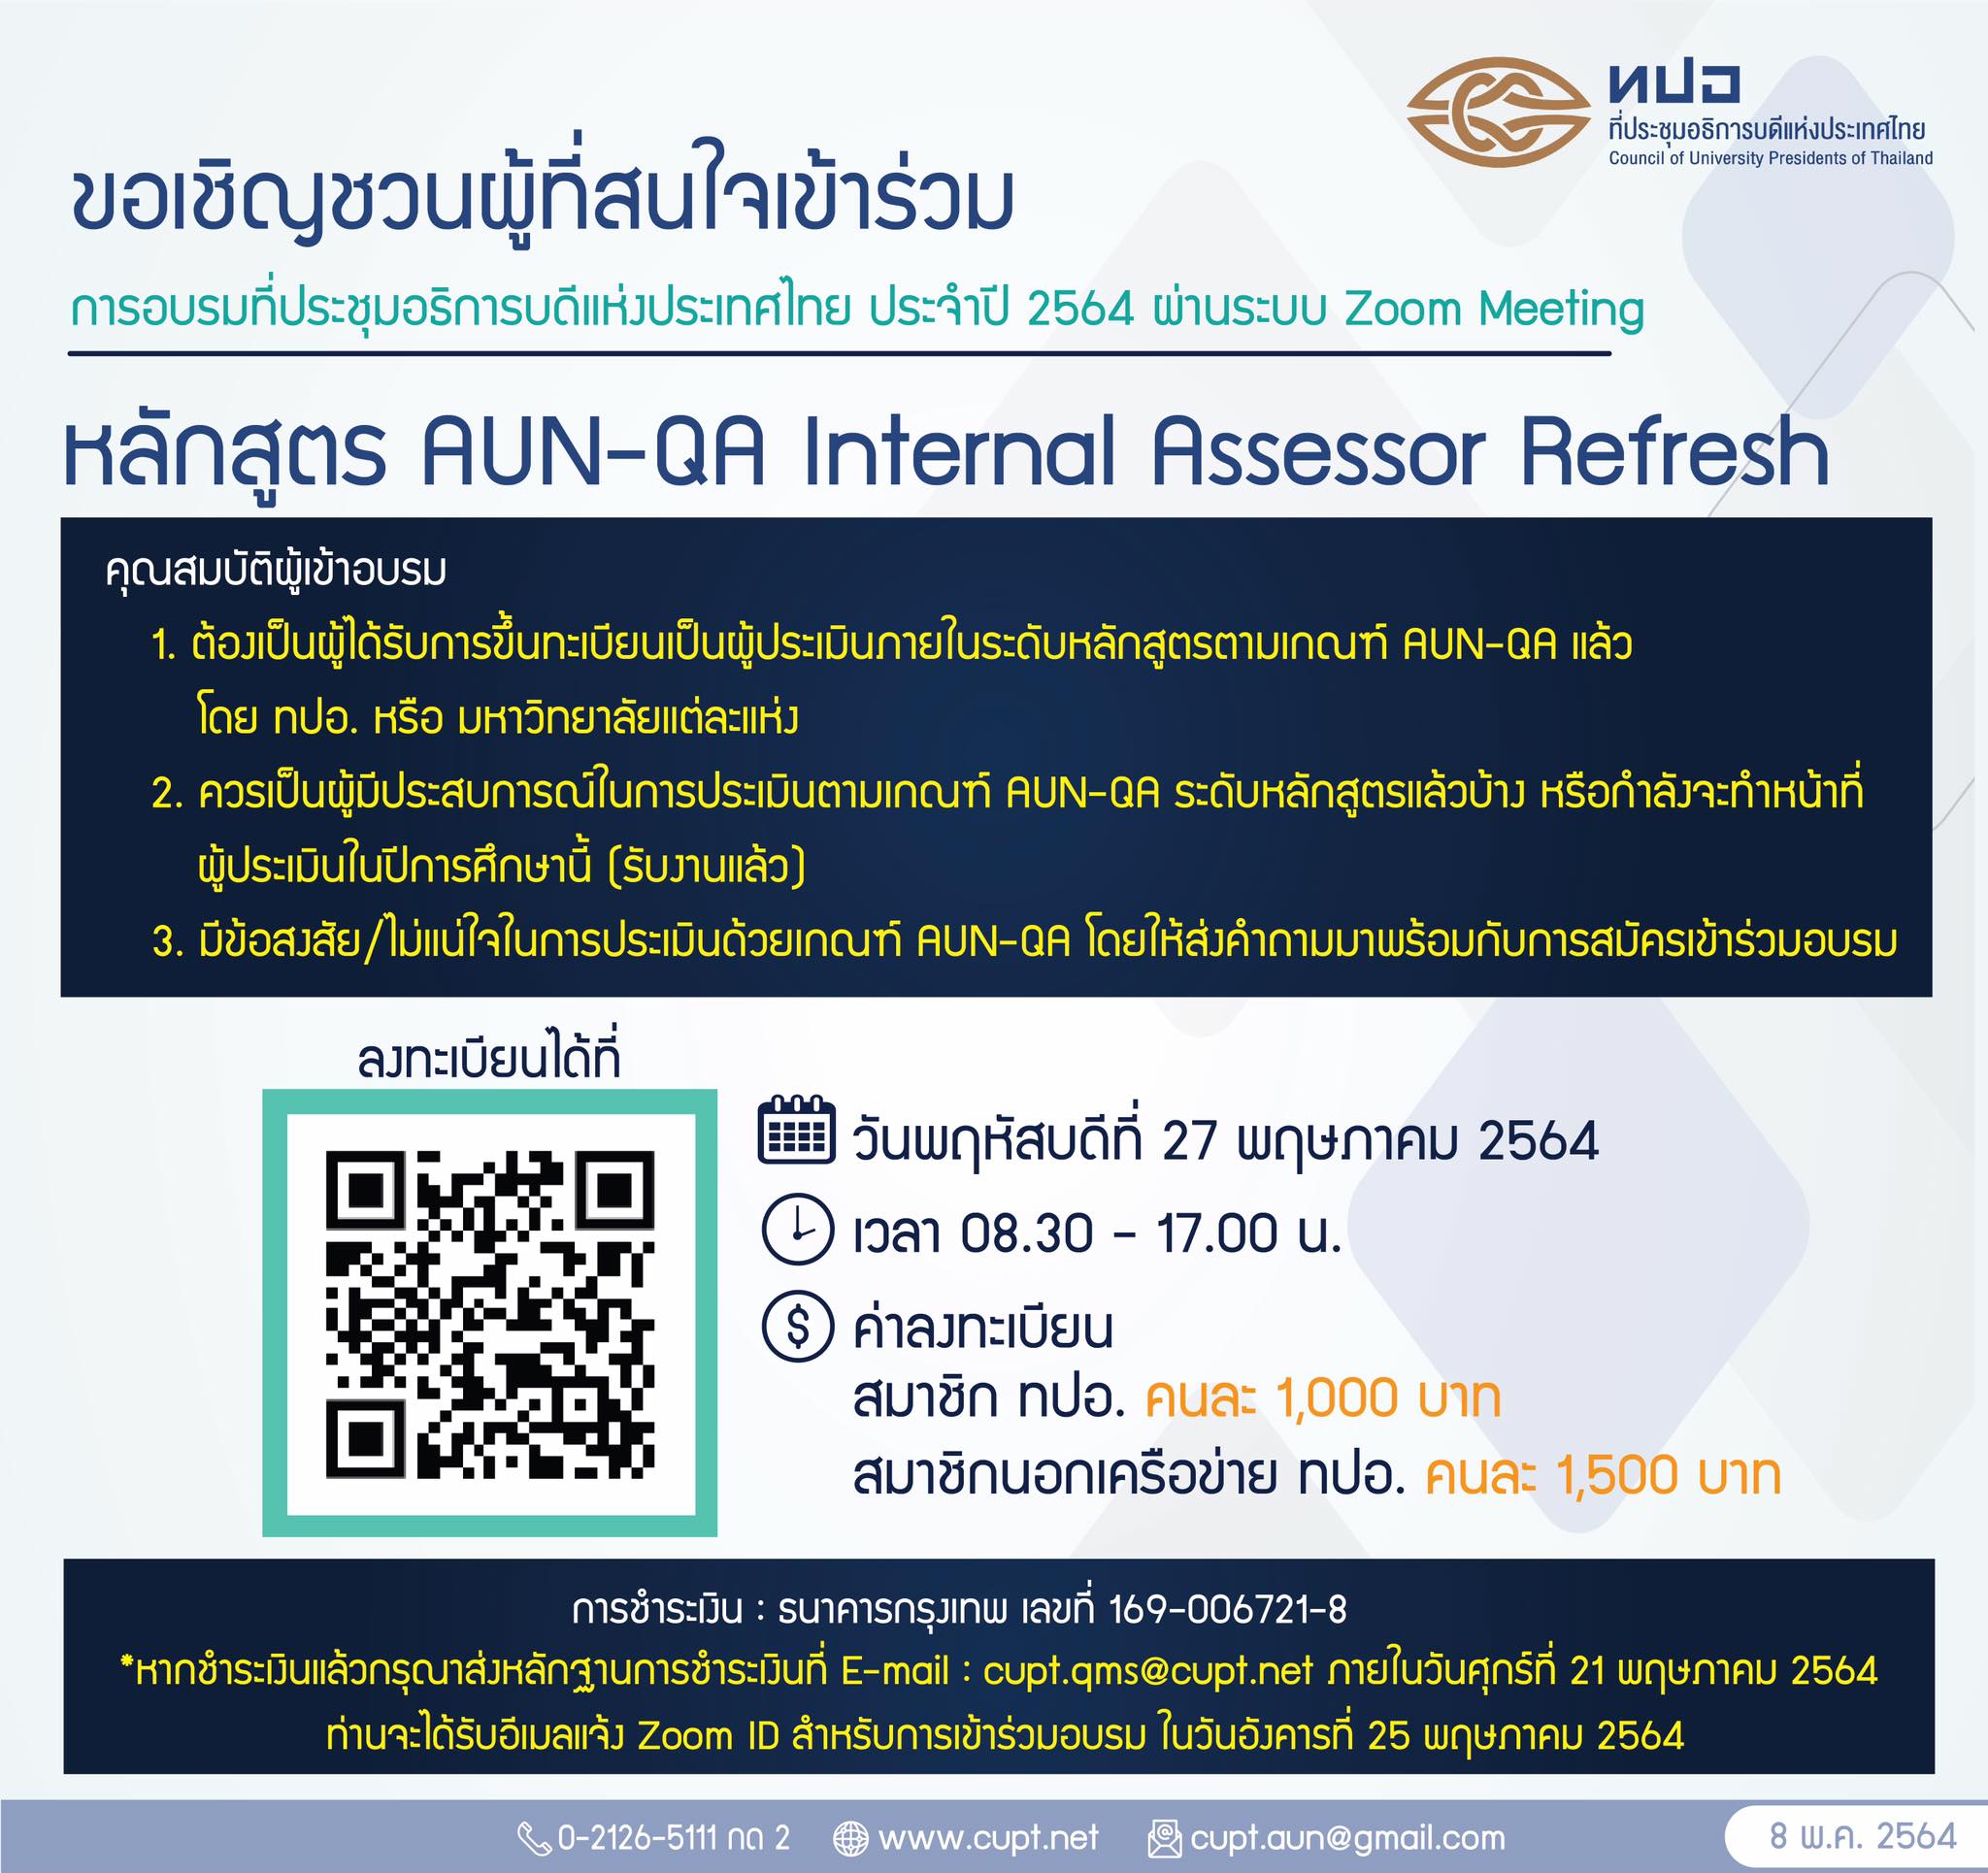 ขอเชิญผู้ที่สนใจเข้าร่วม หลักสูตร AUN-QA Internal Assessor Refresh จัดโดย ทปอ. วันที่ 27 พ.ค. 2564